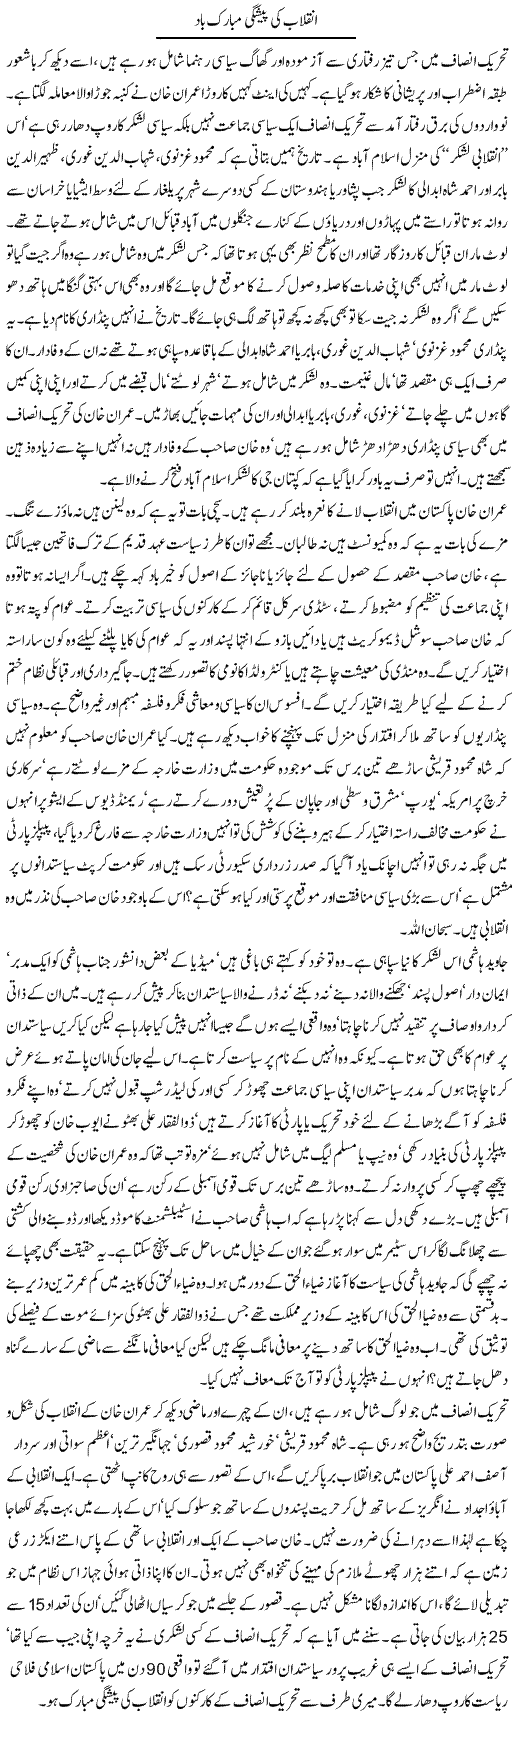 Imran Inqlab Express Column Latif Chaudhry 28 December 2011